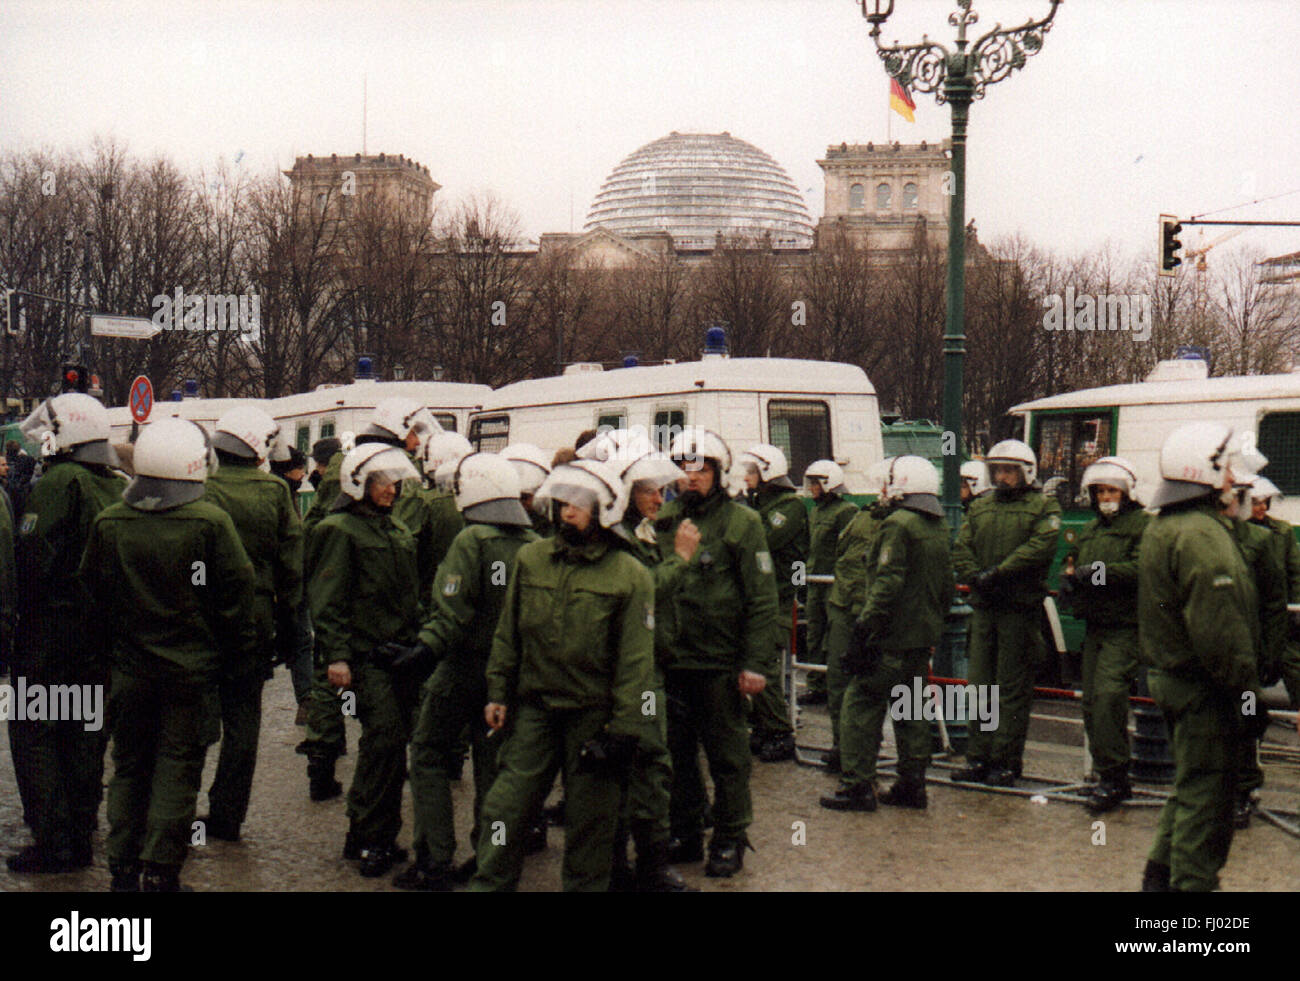 Polizisten, im Hintergrund die Kuppel des Reichstags-Gebaeudes, dimostrazione der rechtsradikalen NPD vor dem Brandenburger Tor Foto Stock